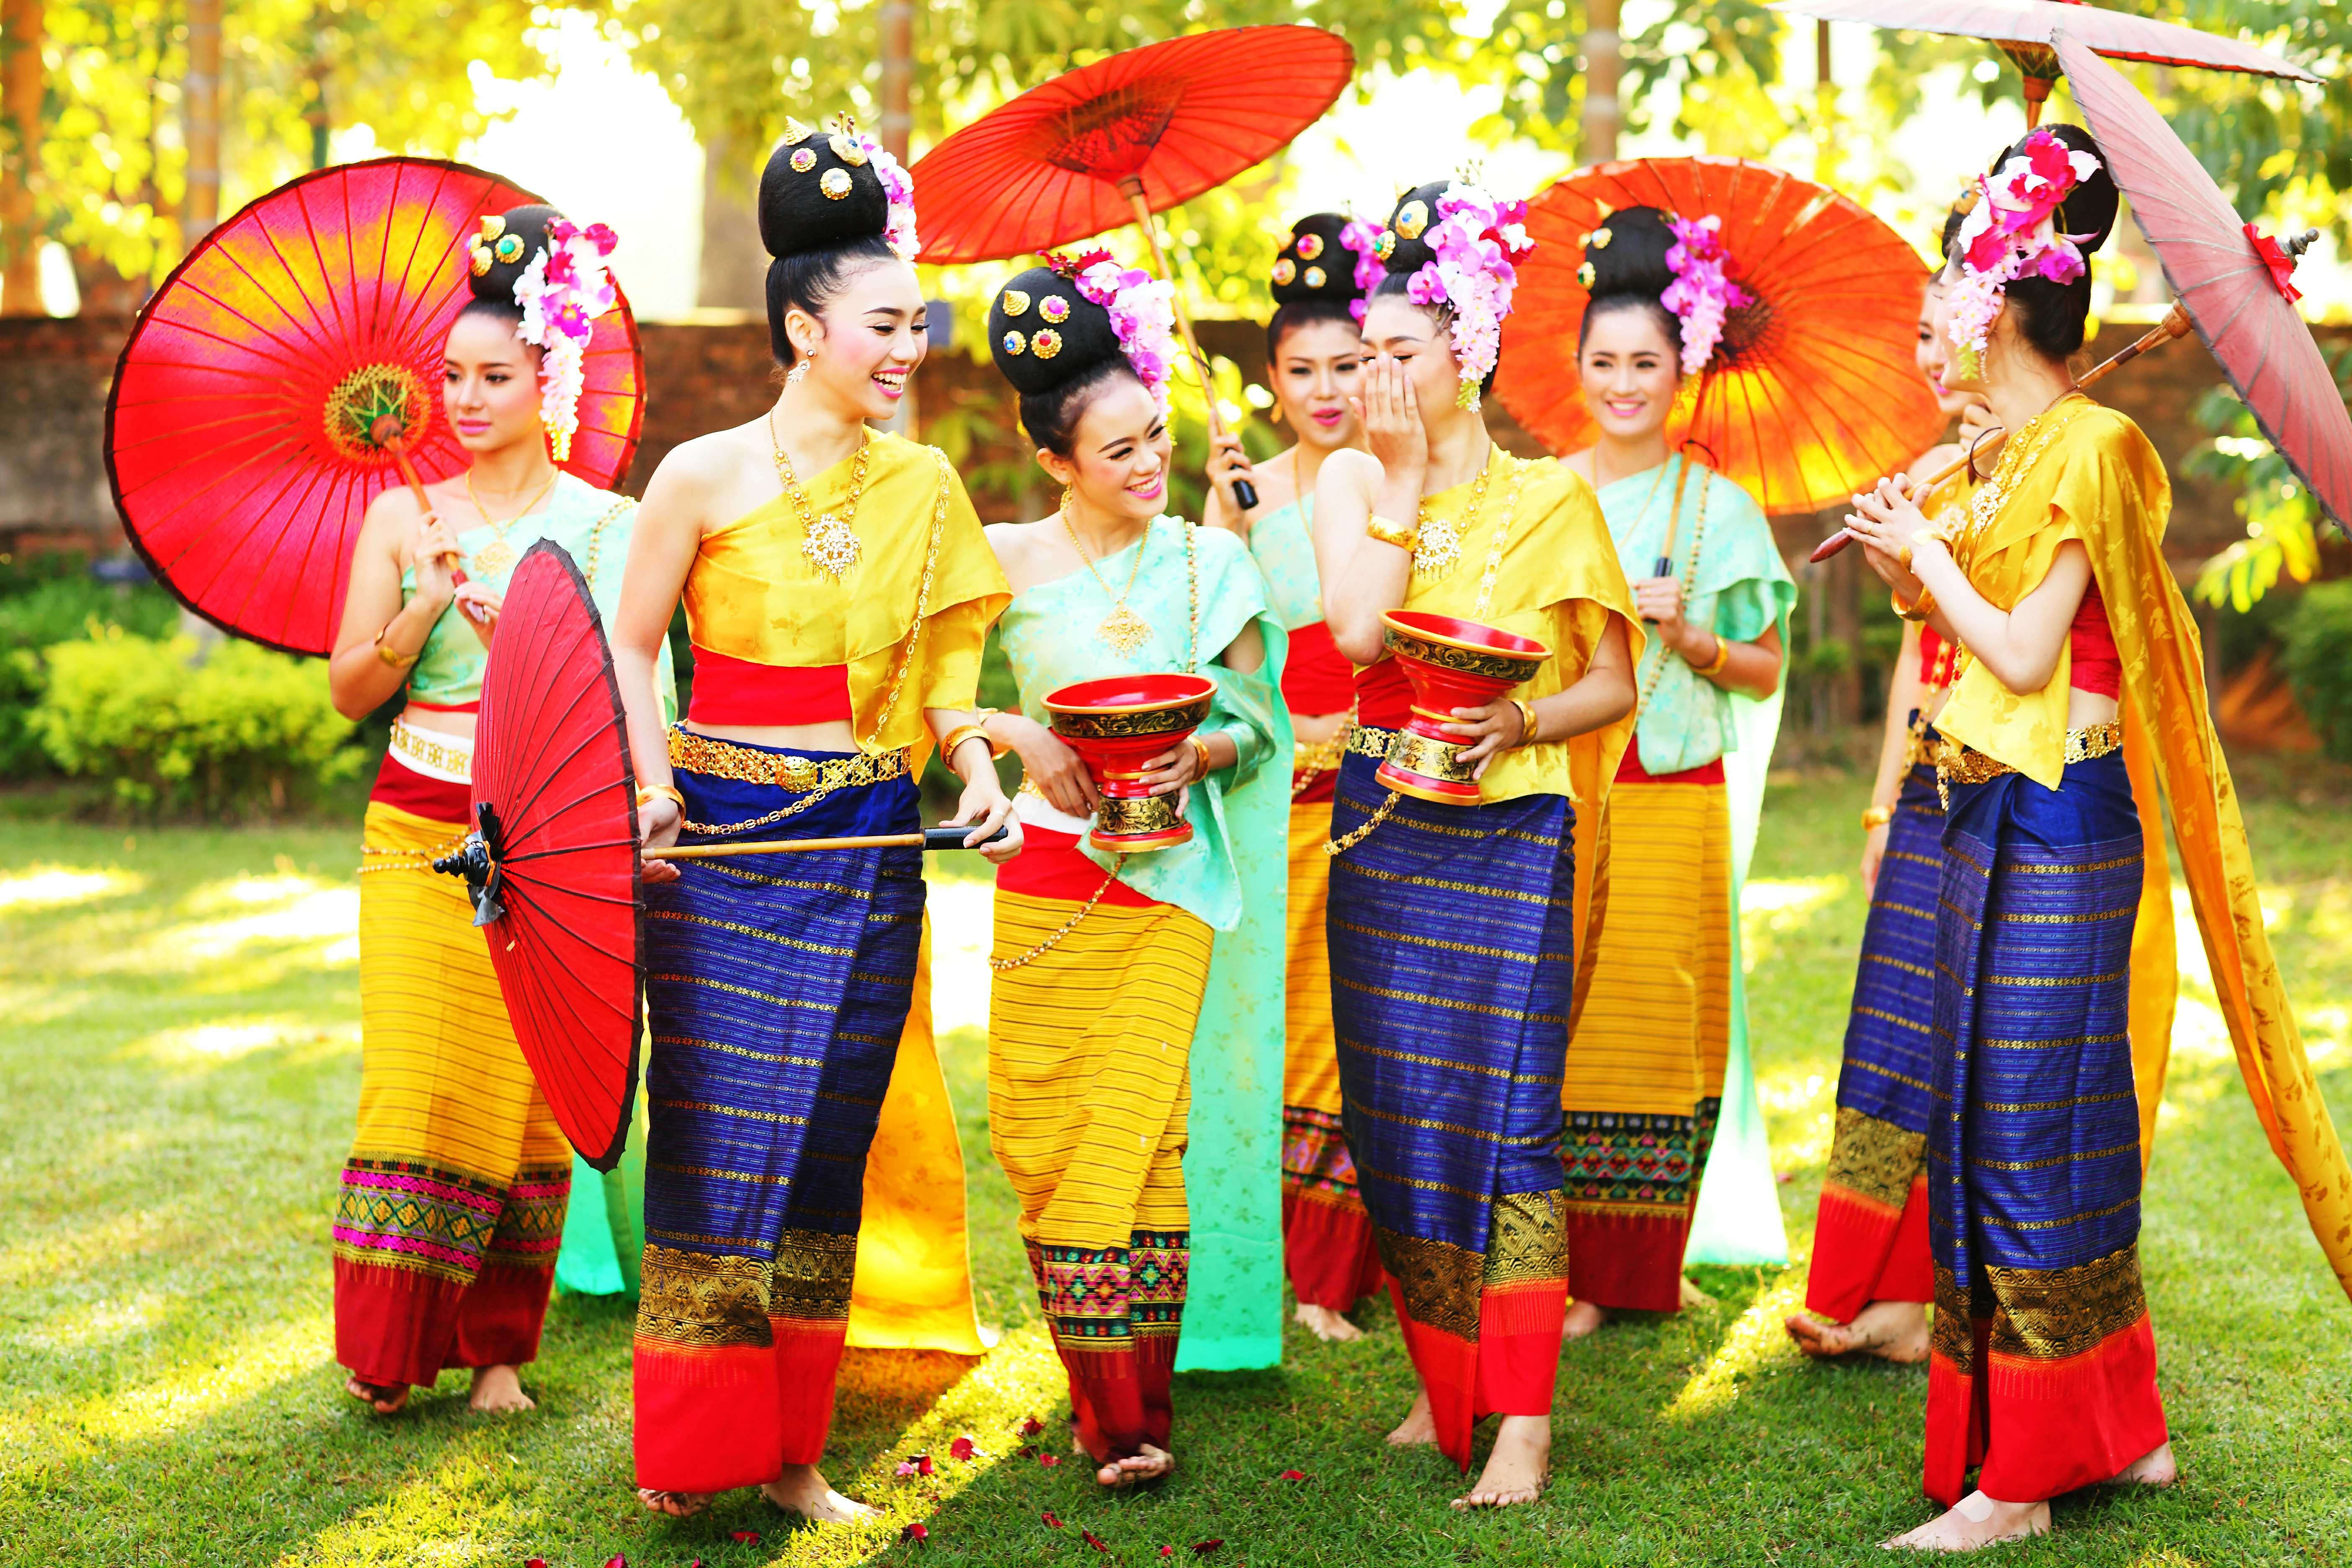 舞蹈国家泰国 图库摄影片. 图片 包括有 聚会所, 礼服, 情感, 古典, 衣裳, 执行者, 艺术, 男性 - 23433222